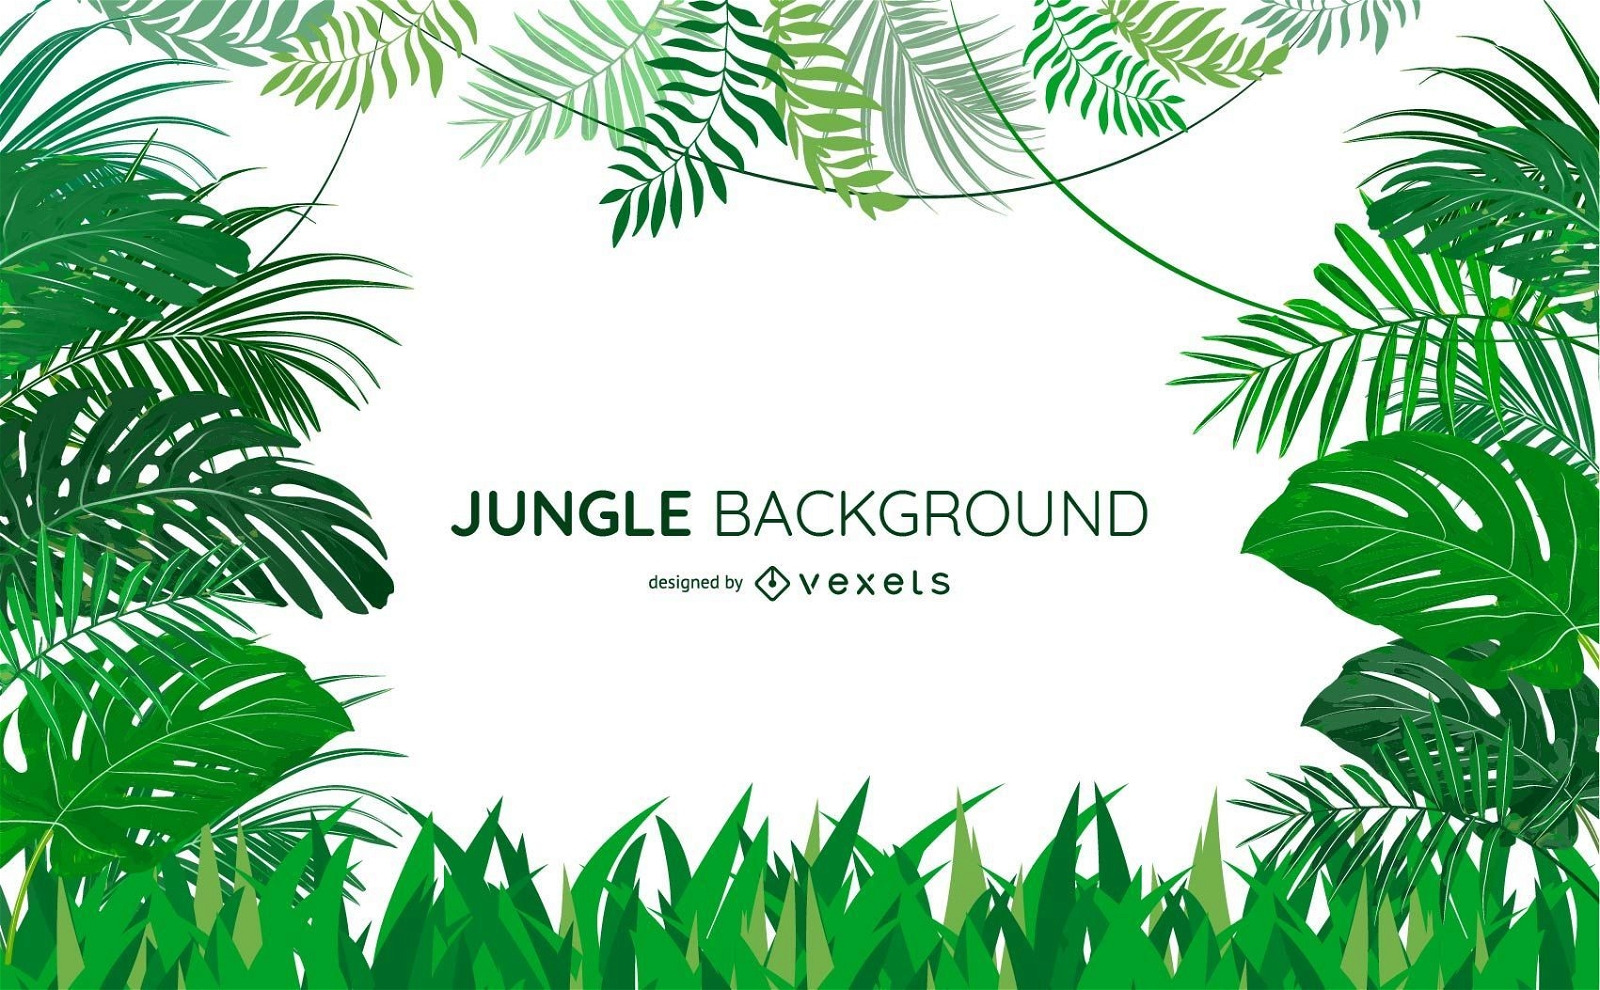 Jungle leaves background design